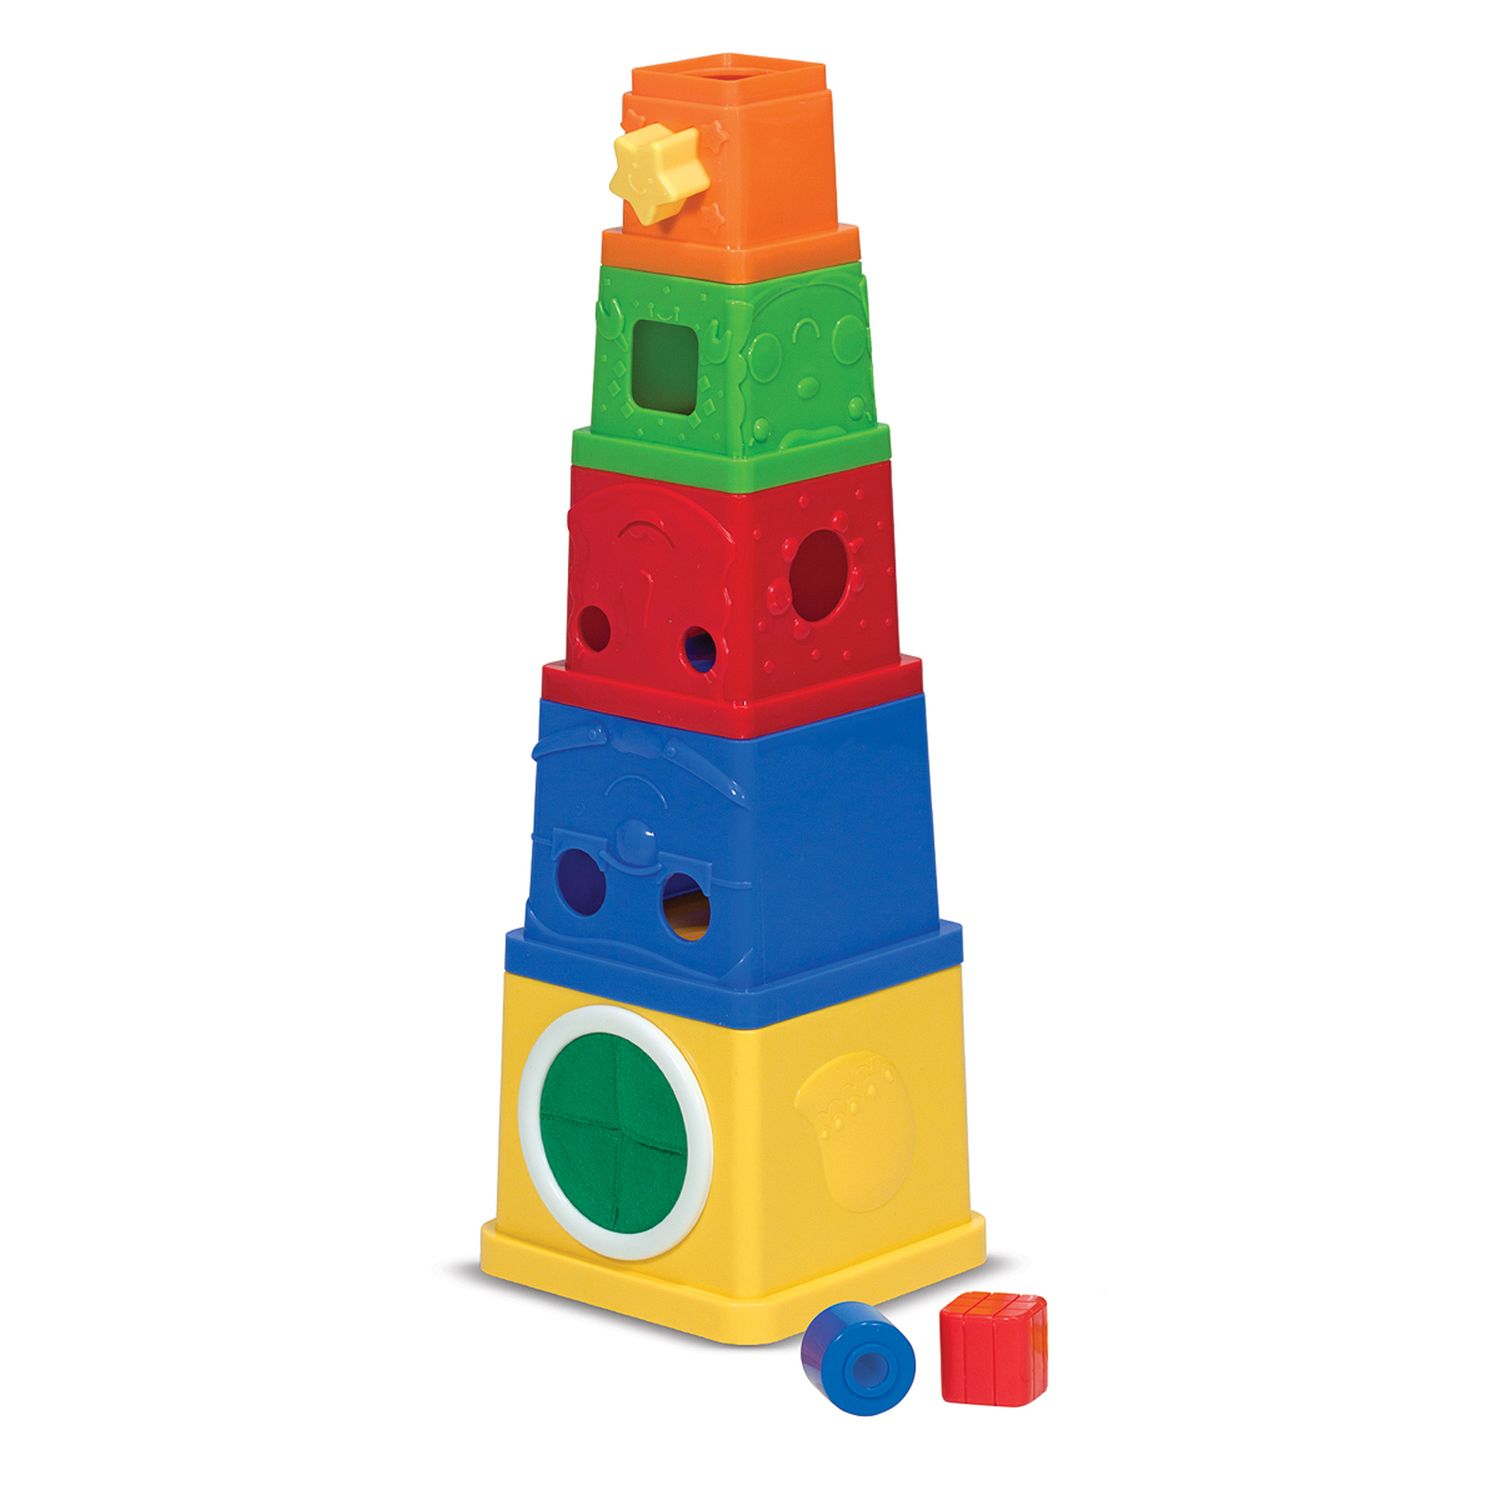 1 year old stacking blocks